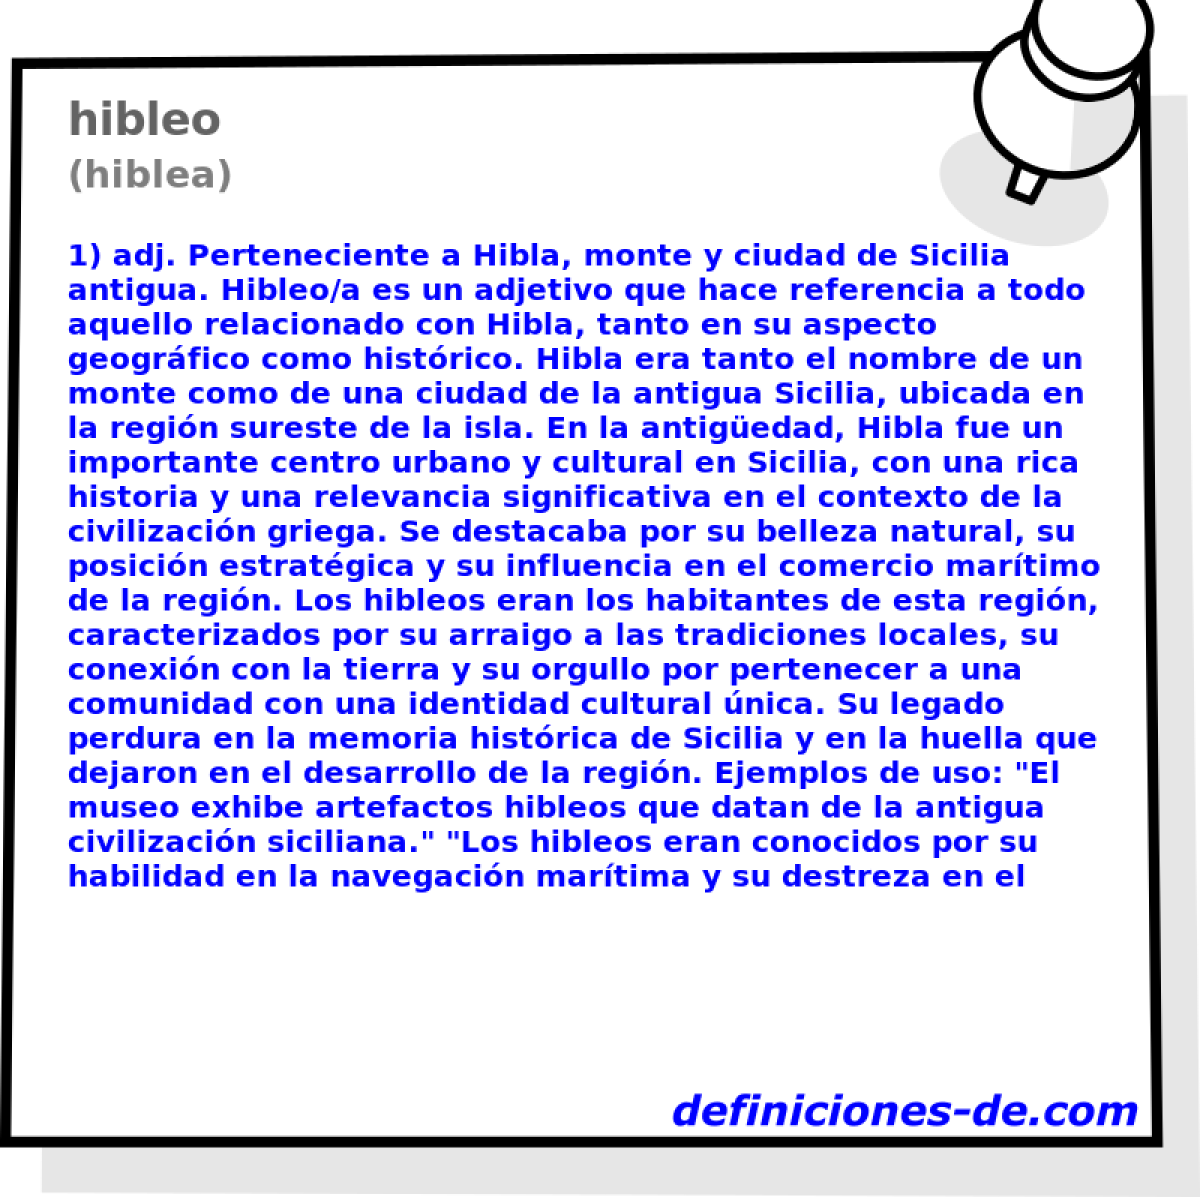 hibleo (hiblea)